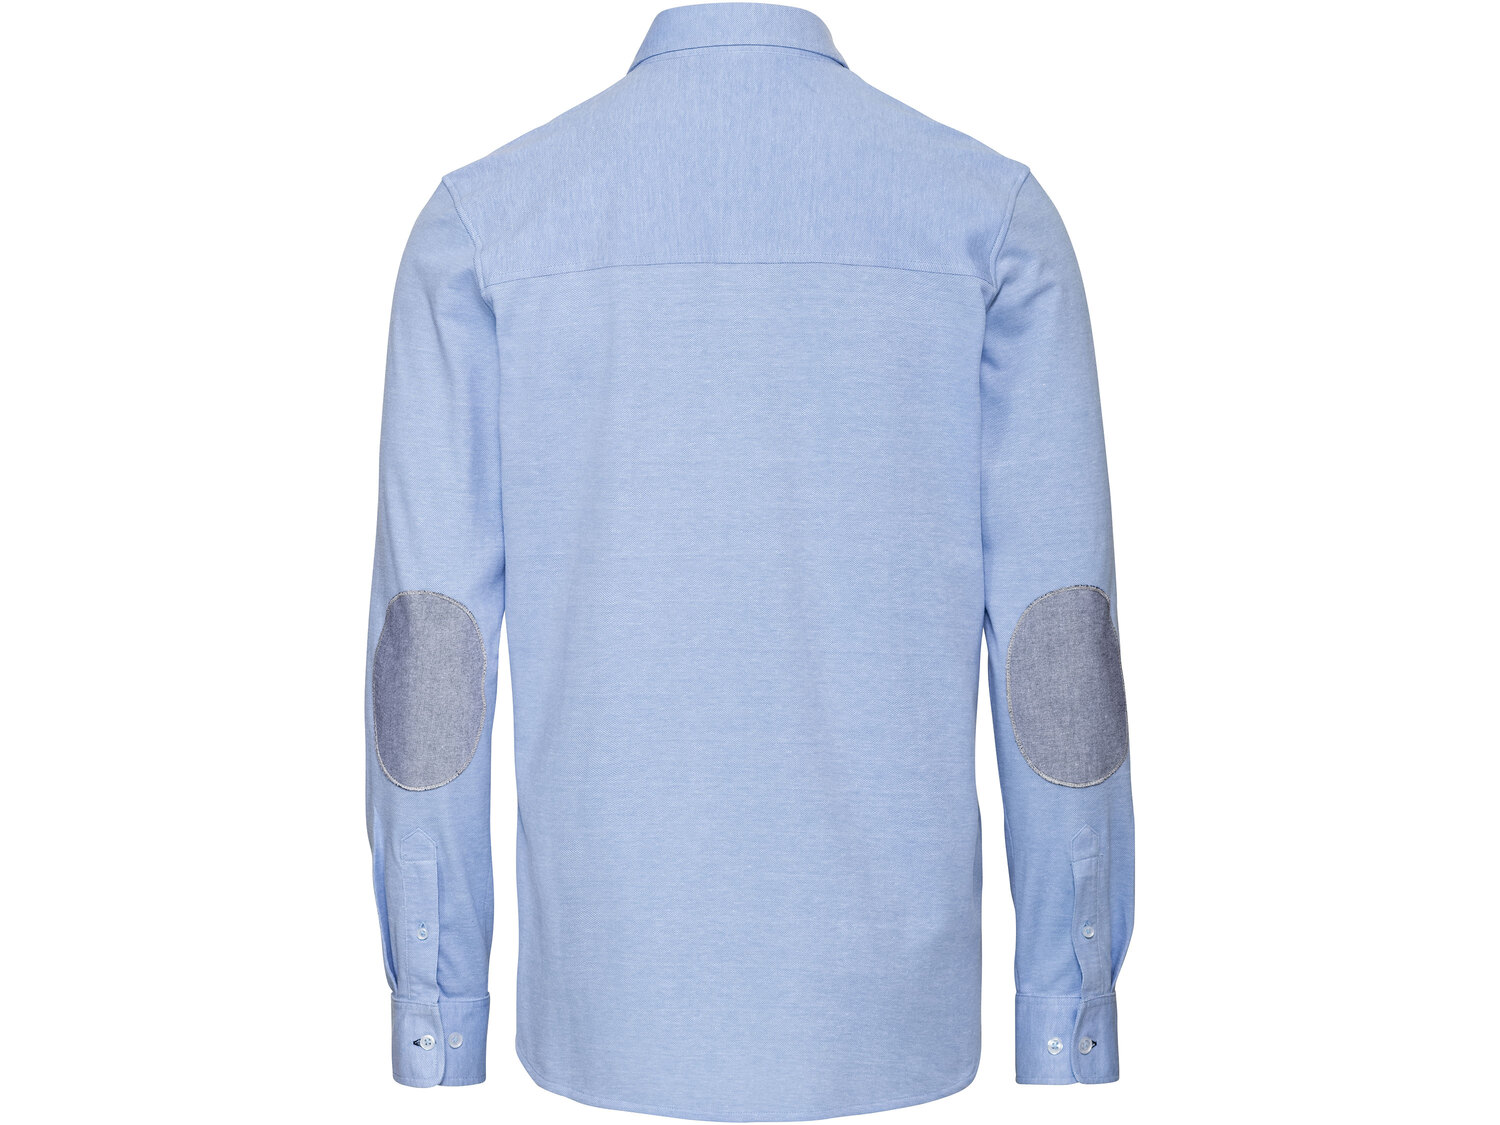 Koszula męska , cena 39,99 PLN 
- 100% bawełny
- rozmiary: S-XXL
- miękki ...